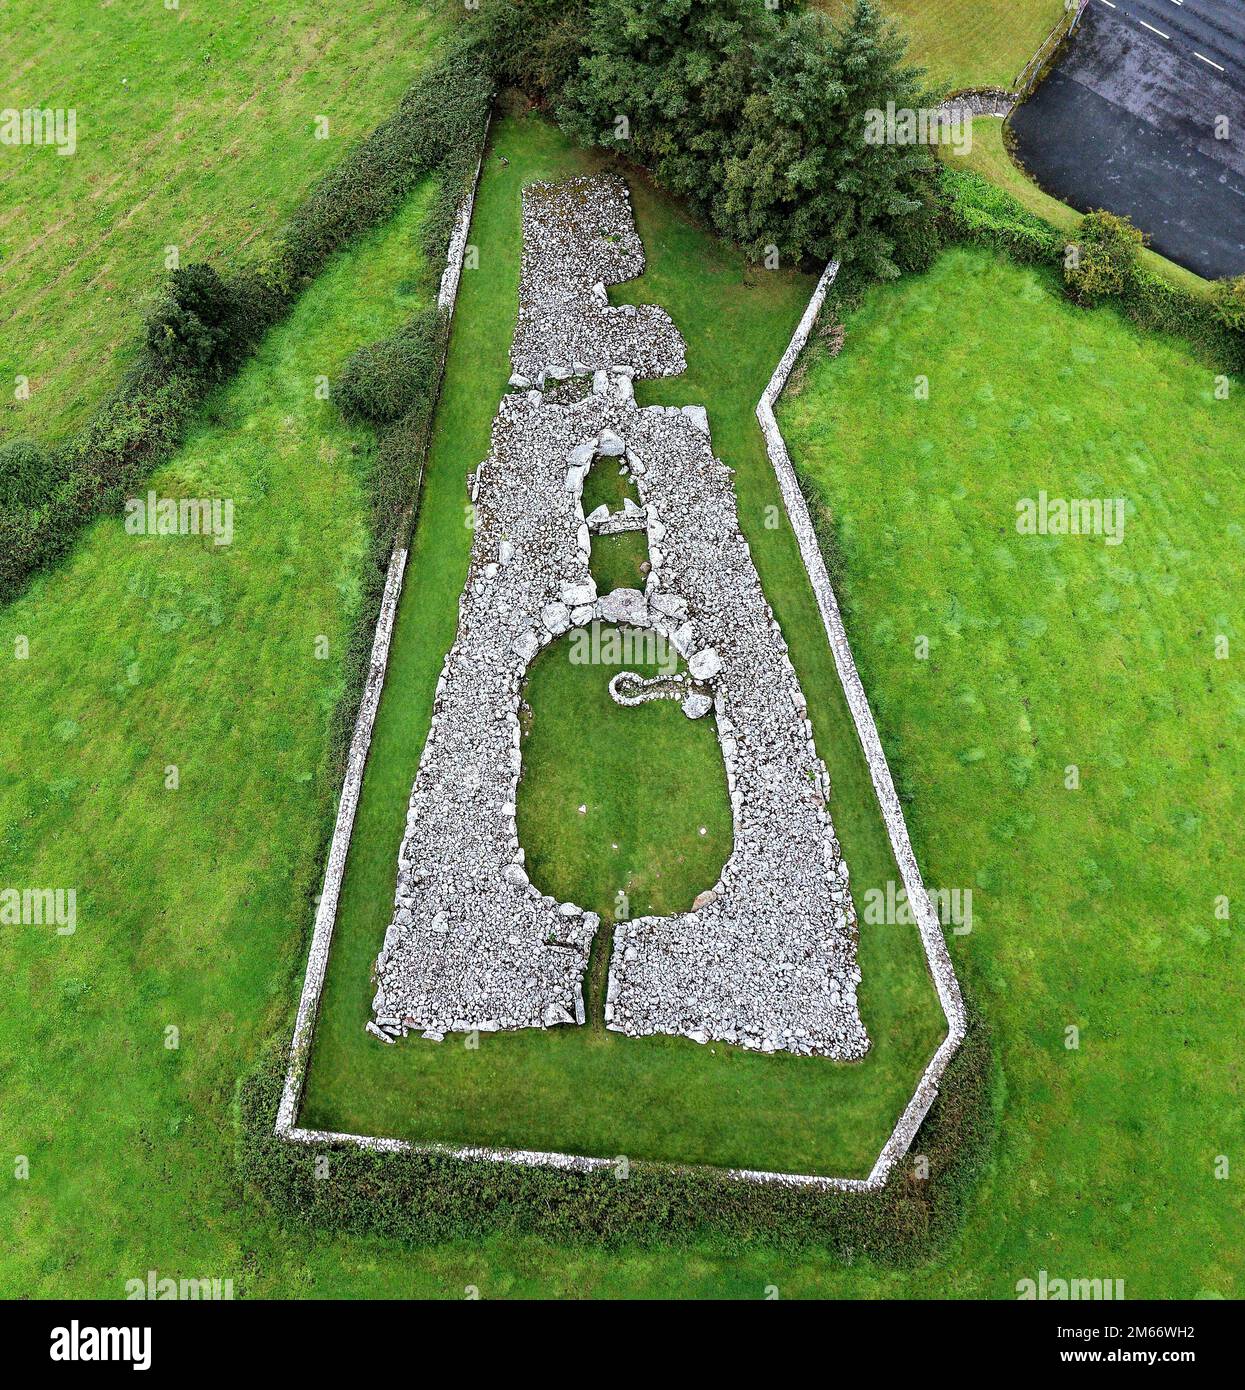 Creevykeel prähistorischer jungsteinzeitlicher Hof Cairn Begräbniskammer Komplex nahe Cliffony, County Sligo, Irland. Zwischen 4500 und 6000 Jahre alt Stockfoto